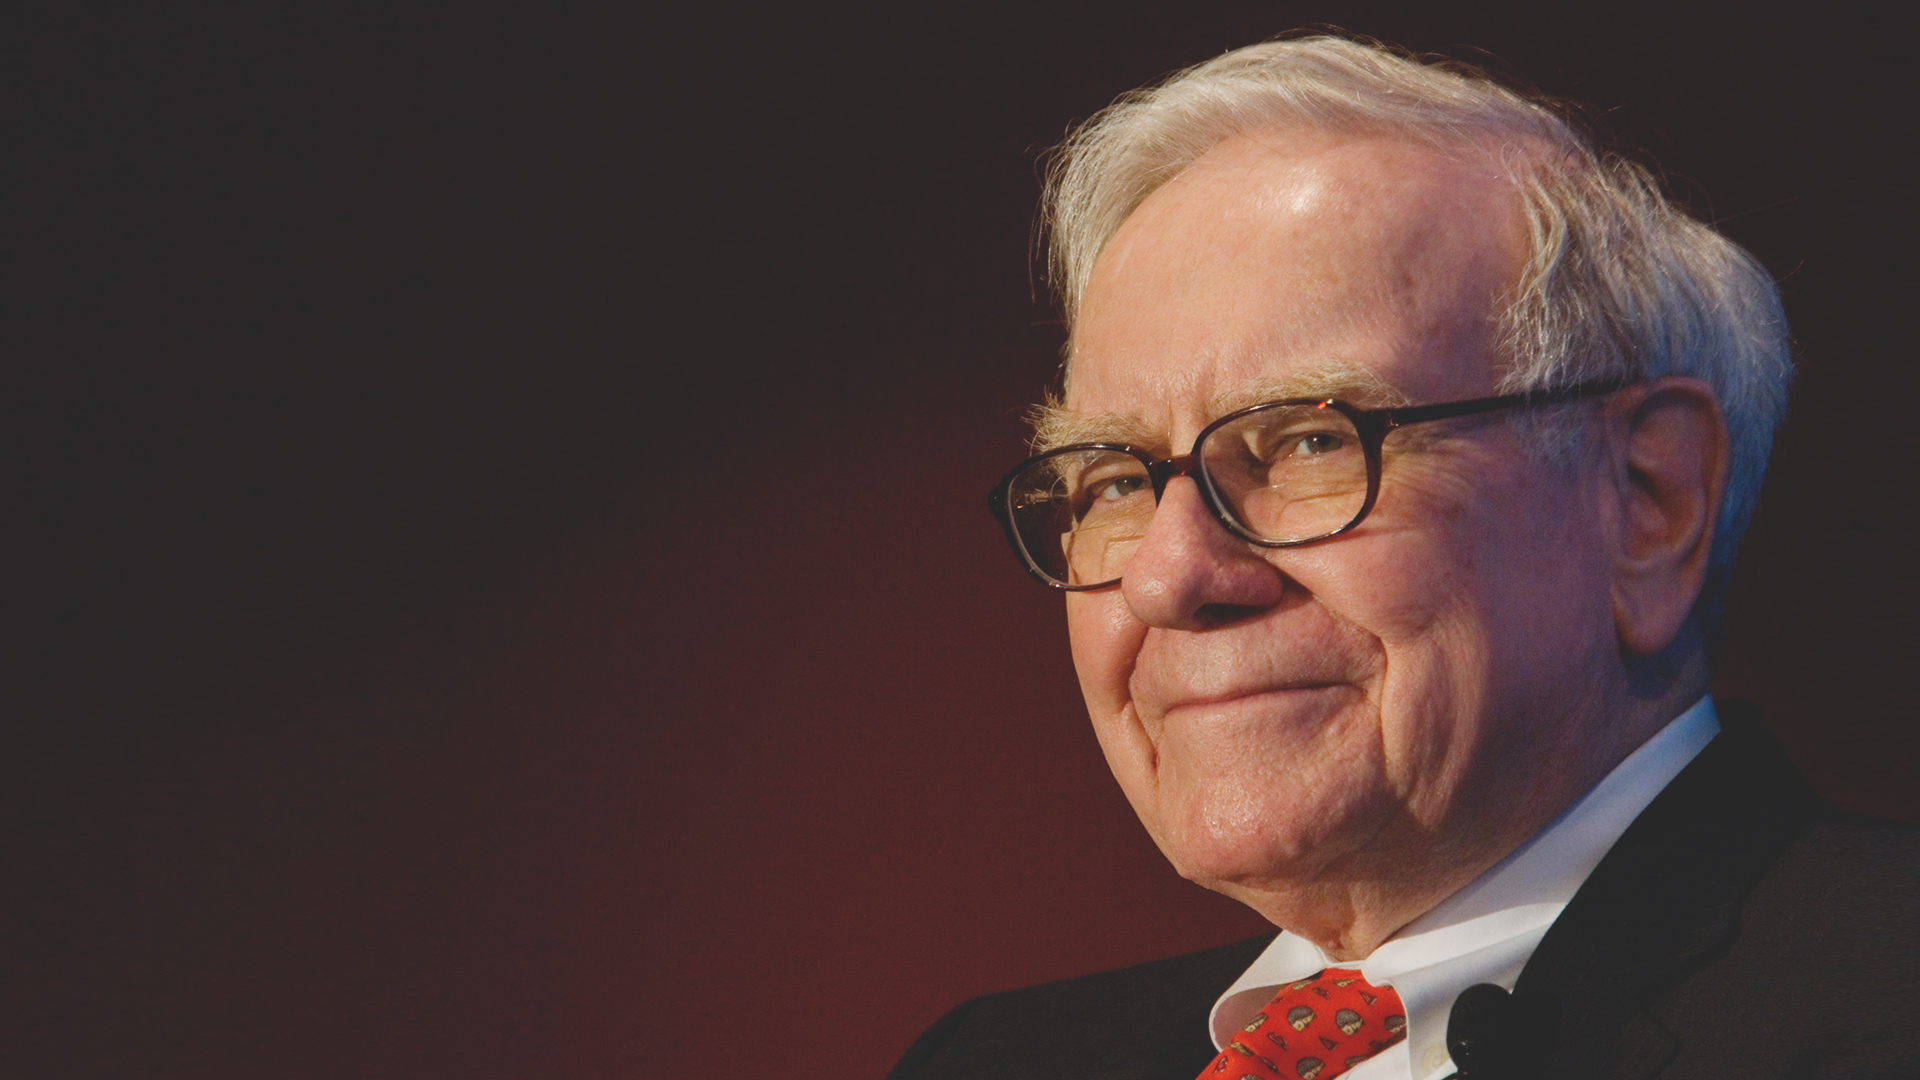 Warren Buffett - 世界で最も裕福な人の 1 人出典: https://quietrev.com/warren-buffett/